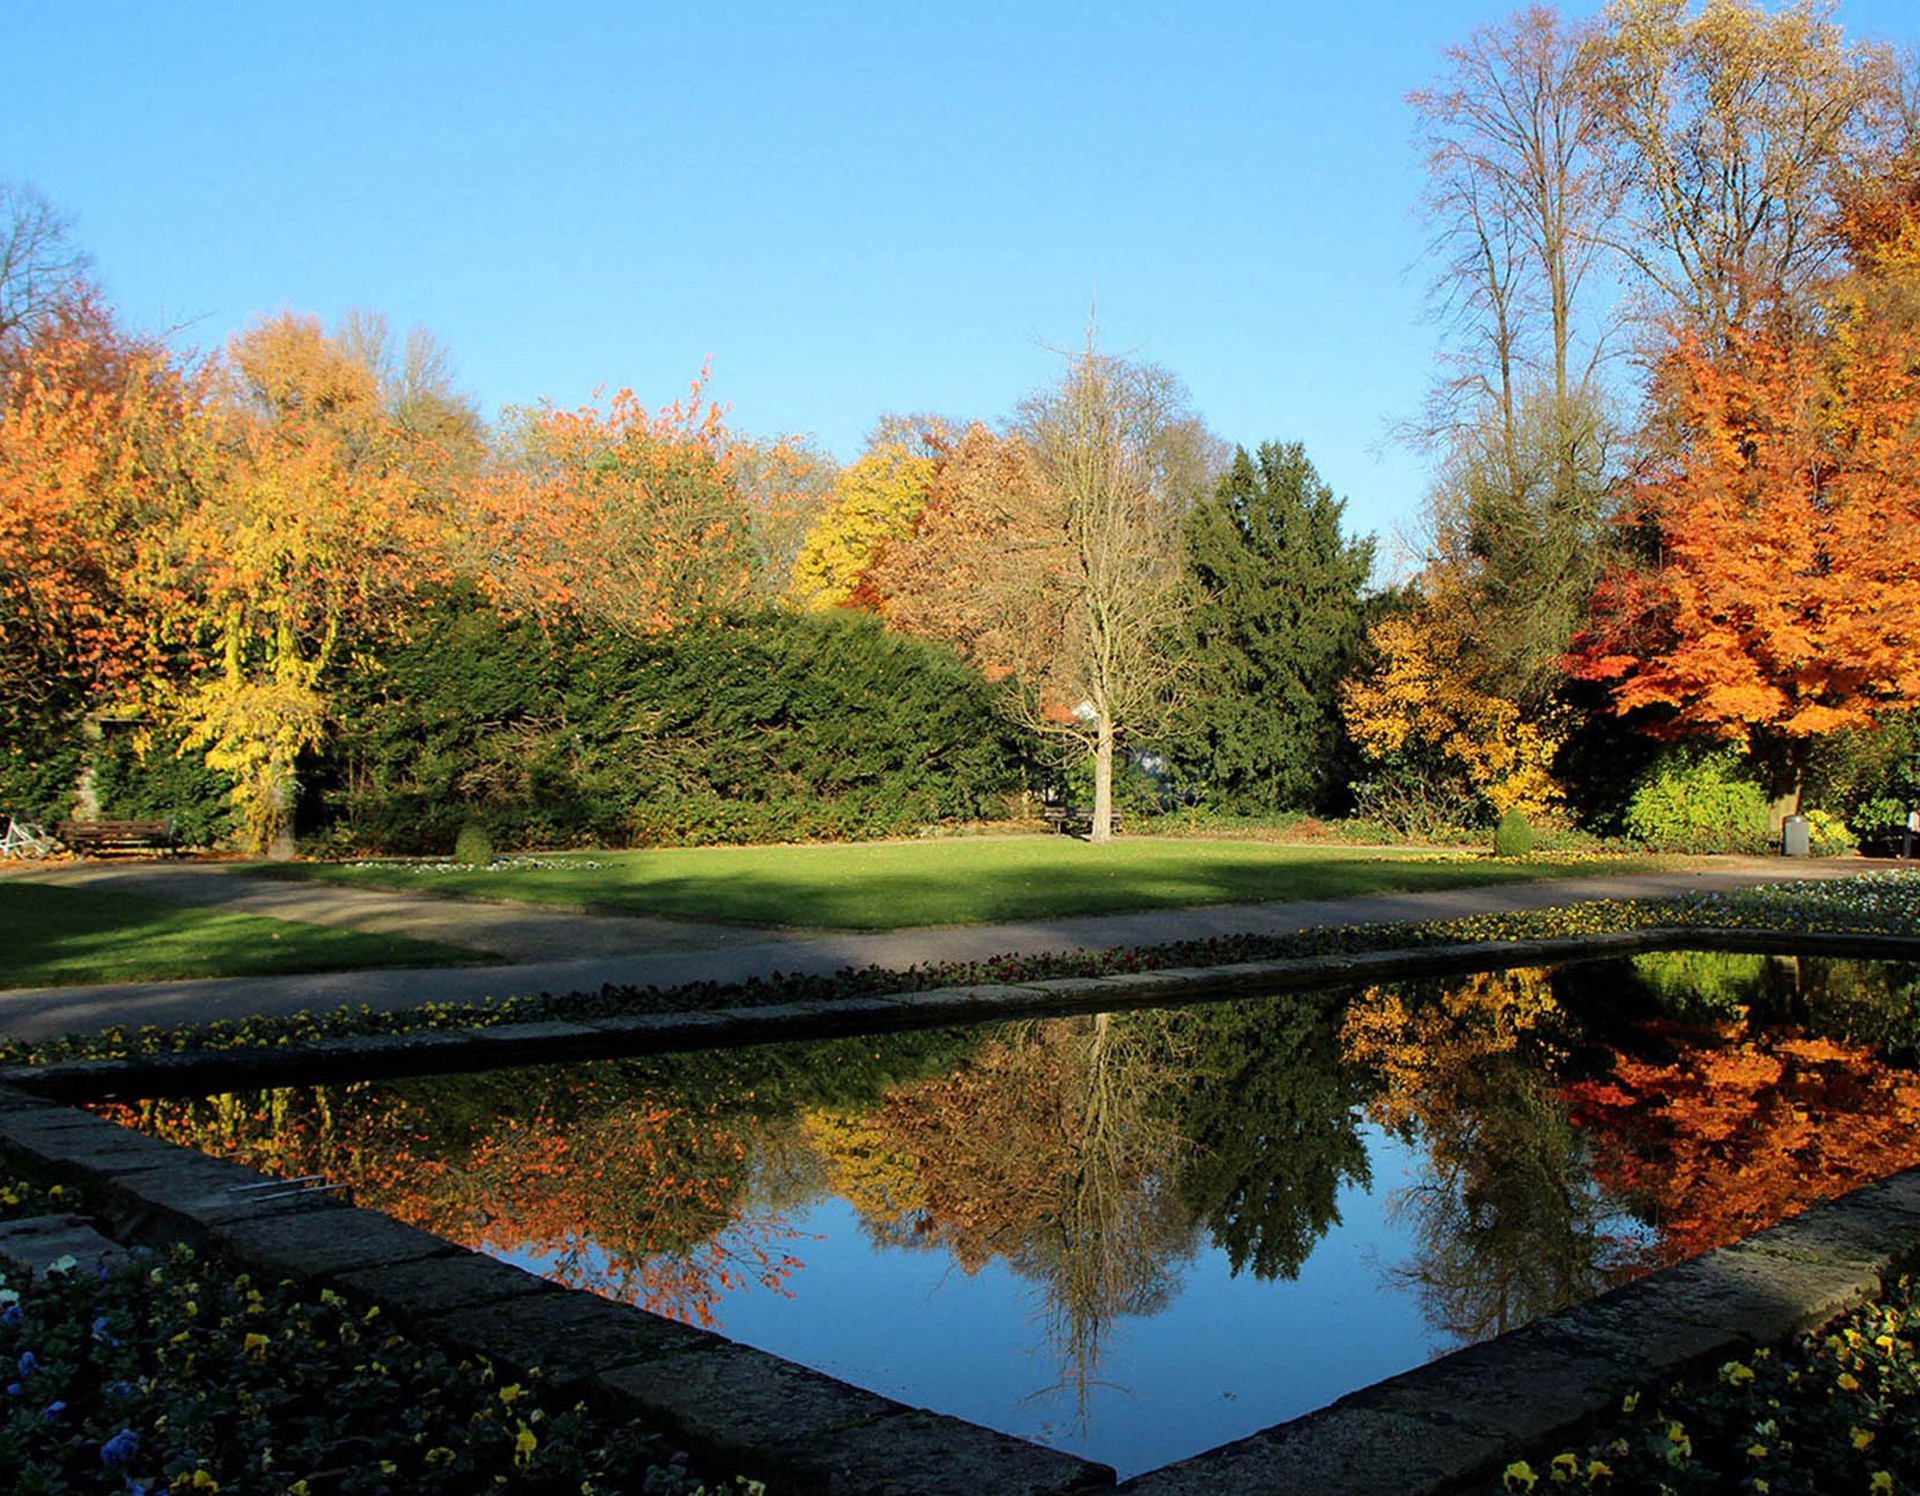 Herbst im Stadtgarten Gelsenkirchen. Zu sehen ist eines von mehreren Brunnenbecken.